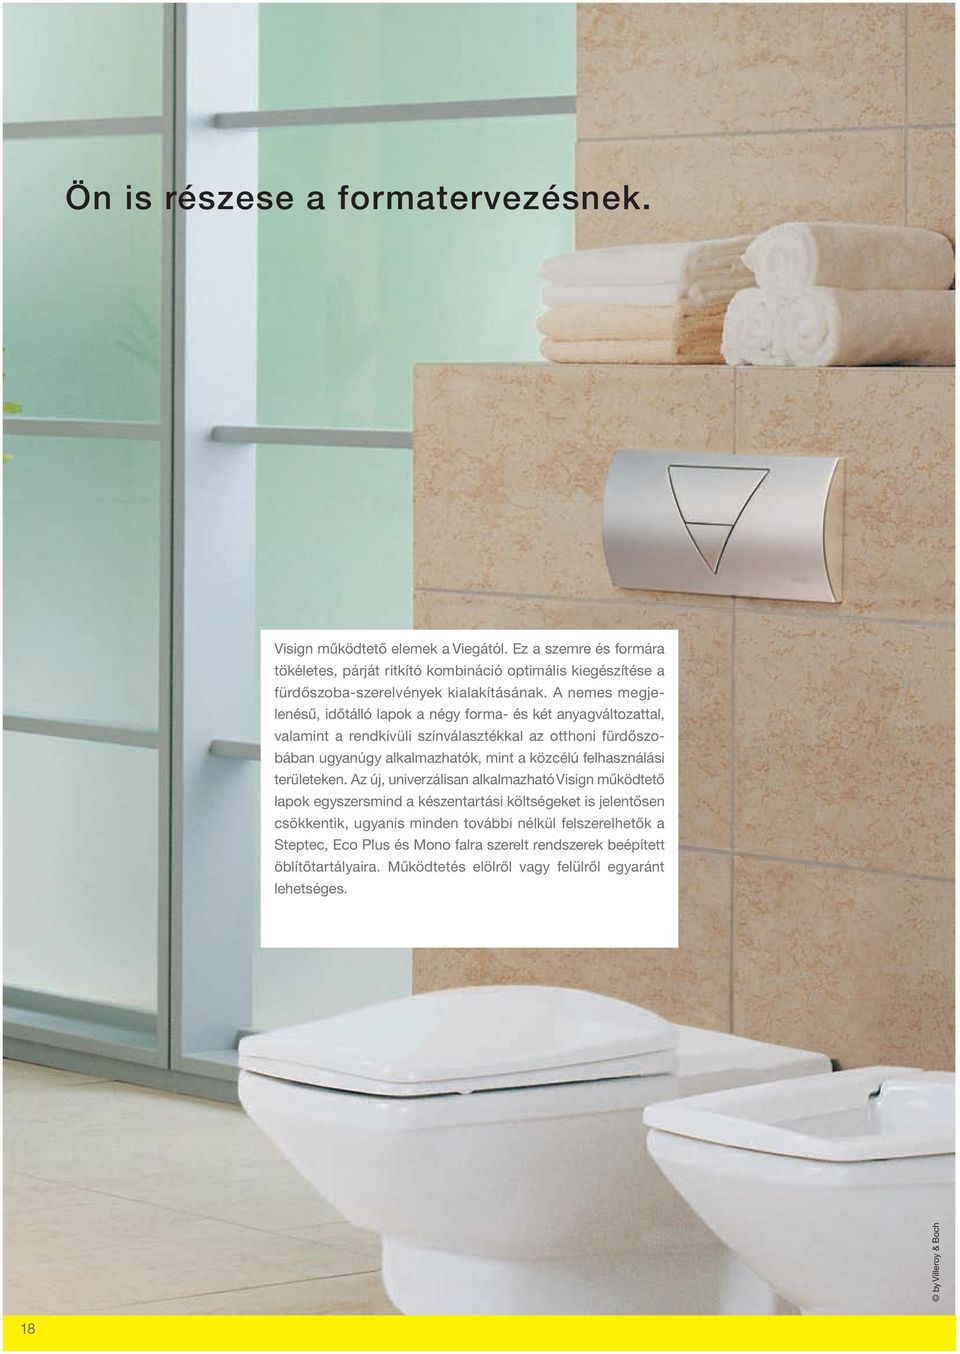 A nemes megjelenésű, időtálló lapok a négy forma- és két anyagváltozattal, valamint a rendkívüli színválasztékkal az otthoni fürdőszobában ugyanúgy alkalmazhatók, mint a közcélú